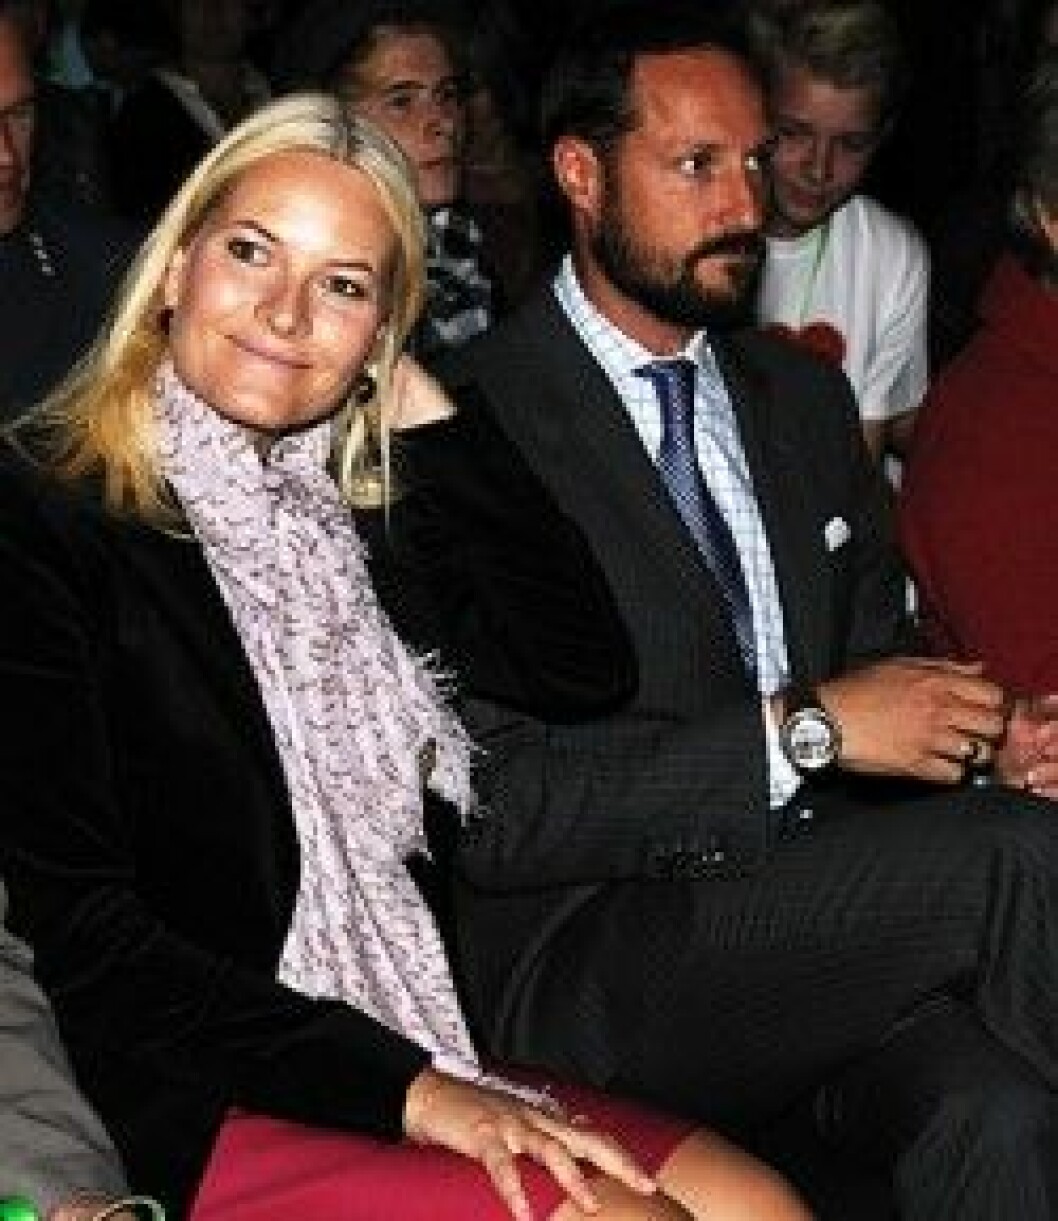 Kronprinsessan Mette-Marit och kronprins Haakon under sitt besök i Drammen.